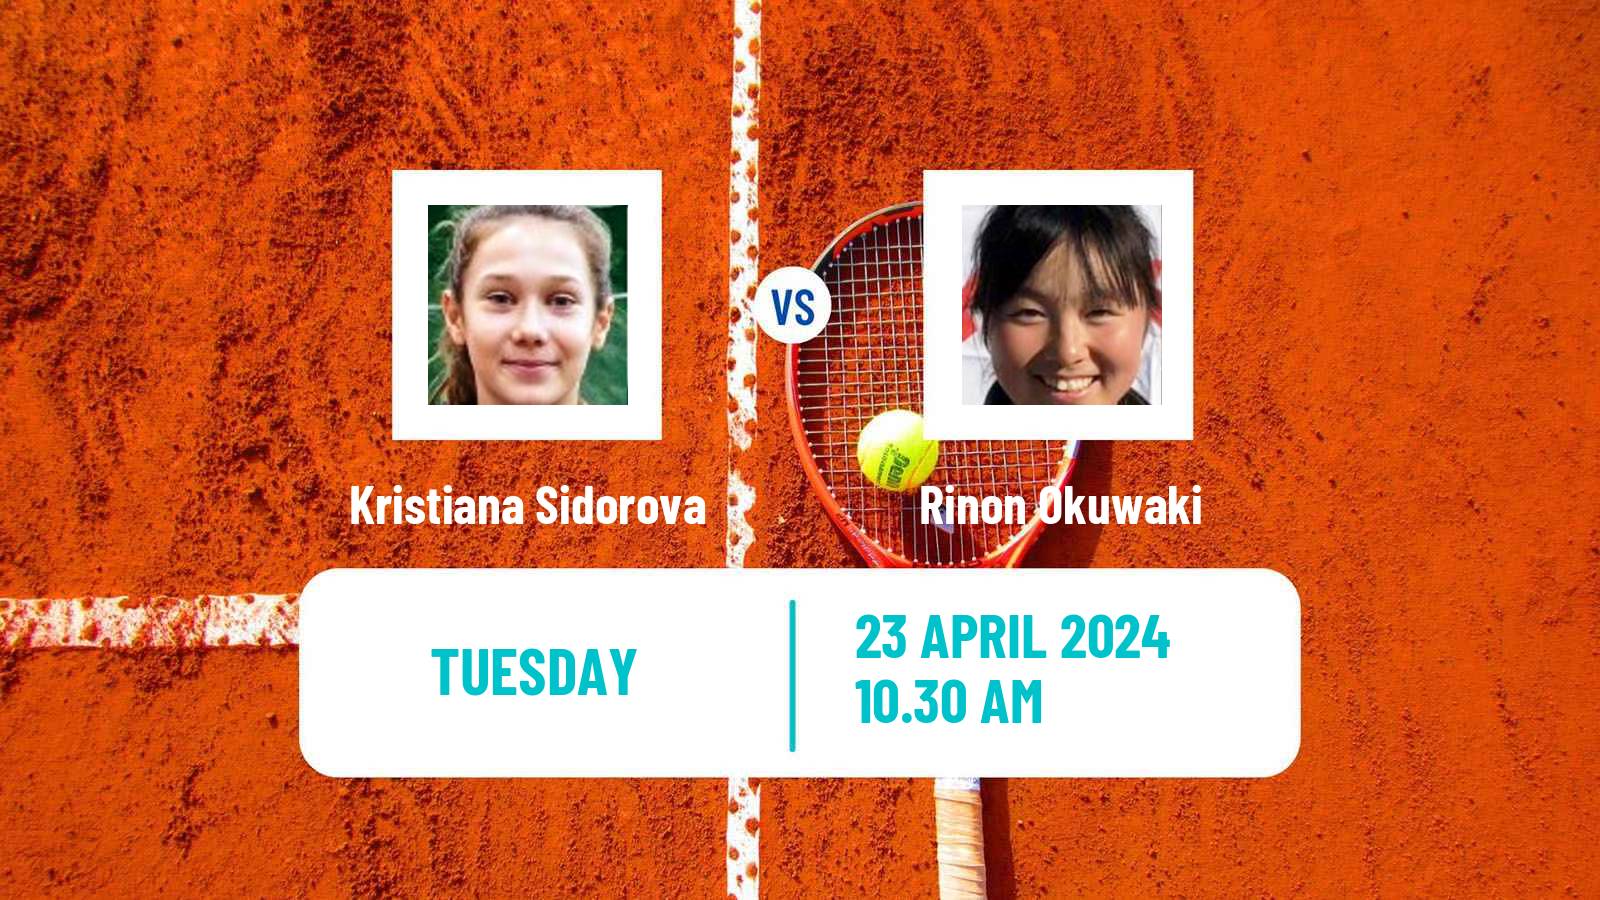 Tennis ITF W15 Antalya 11 Women Kristiana Sidorova - Rinon Okuwaki